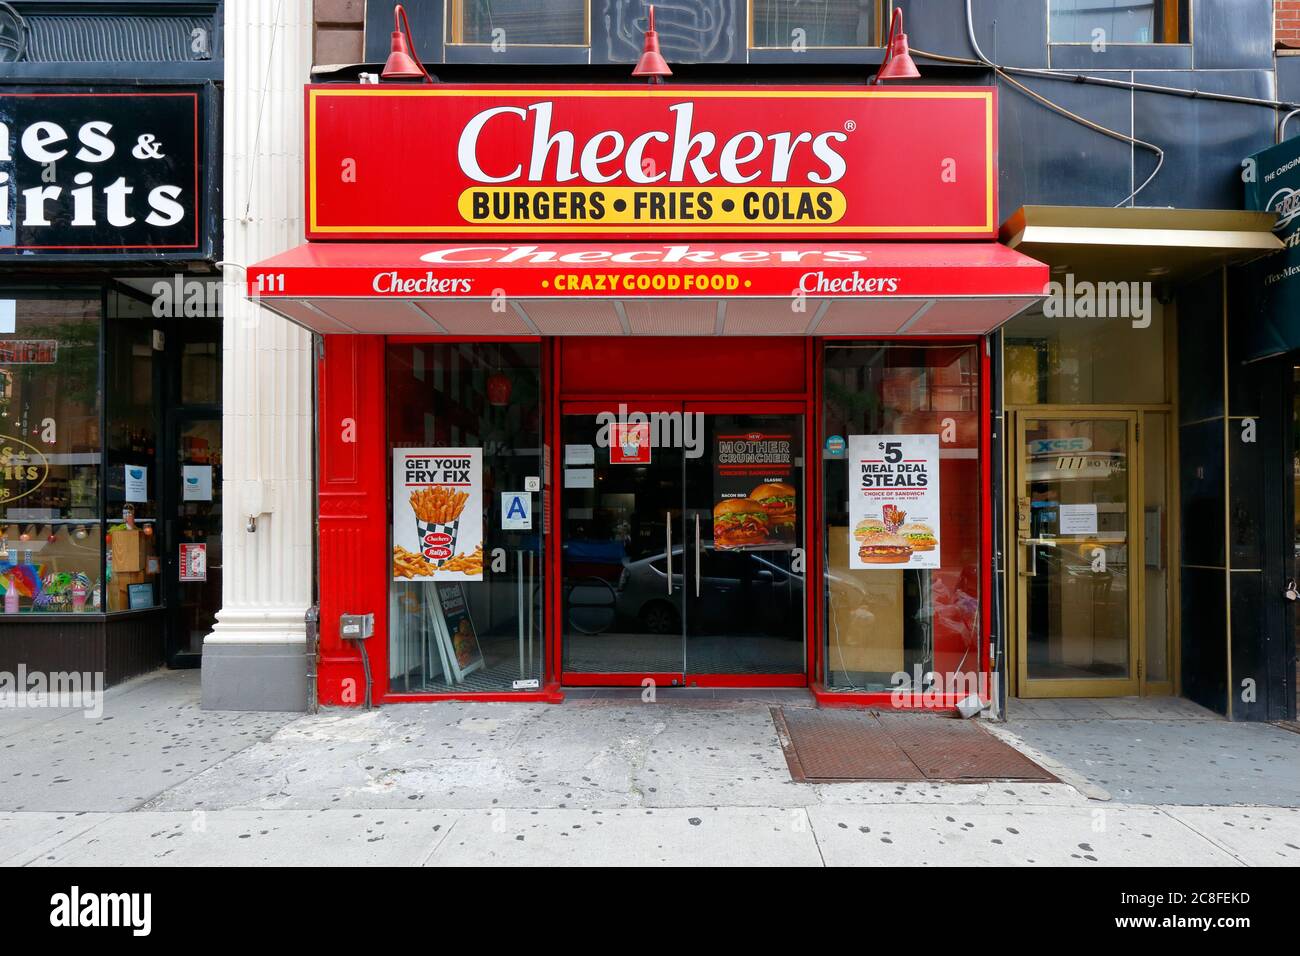 Checkers, 111 court St, Brooklyn, NY. Façade extérieure d'un restaurant de hamburgers à restauration rapide dans le centre-ville de Brooklyn. Banque D'Images